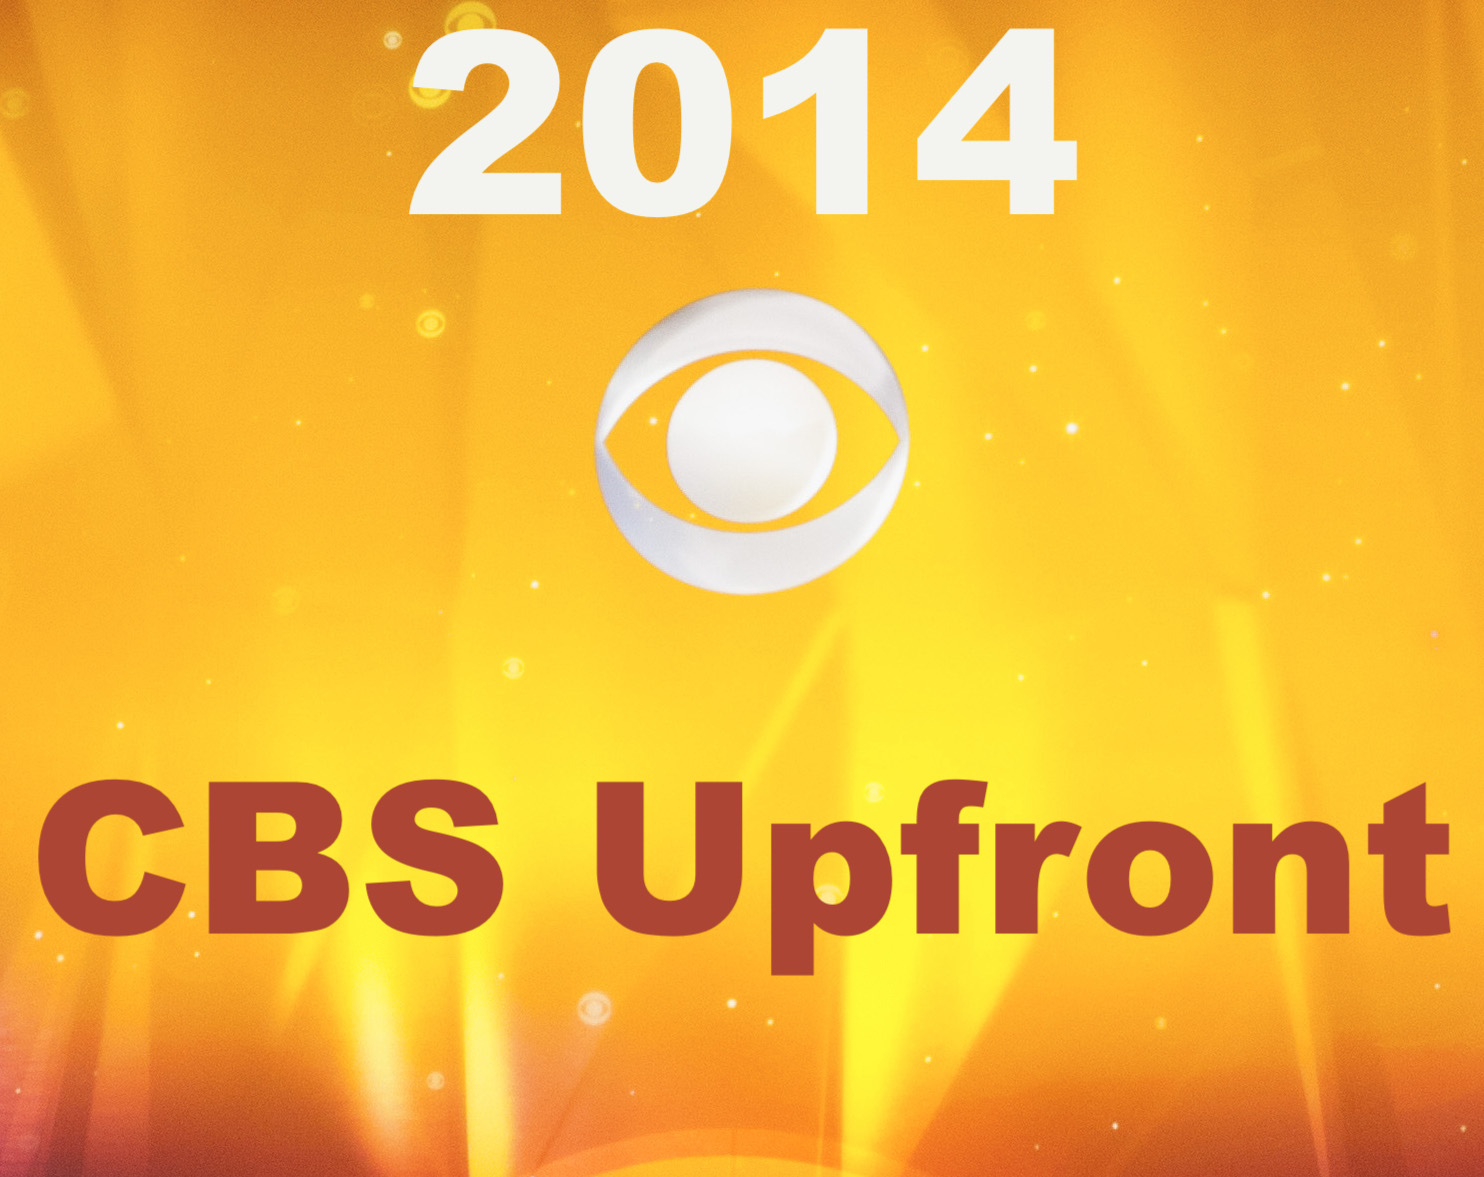 2014 CBS Upfront